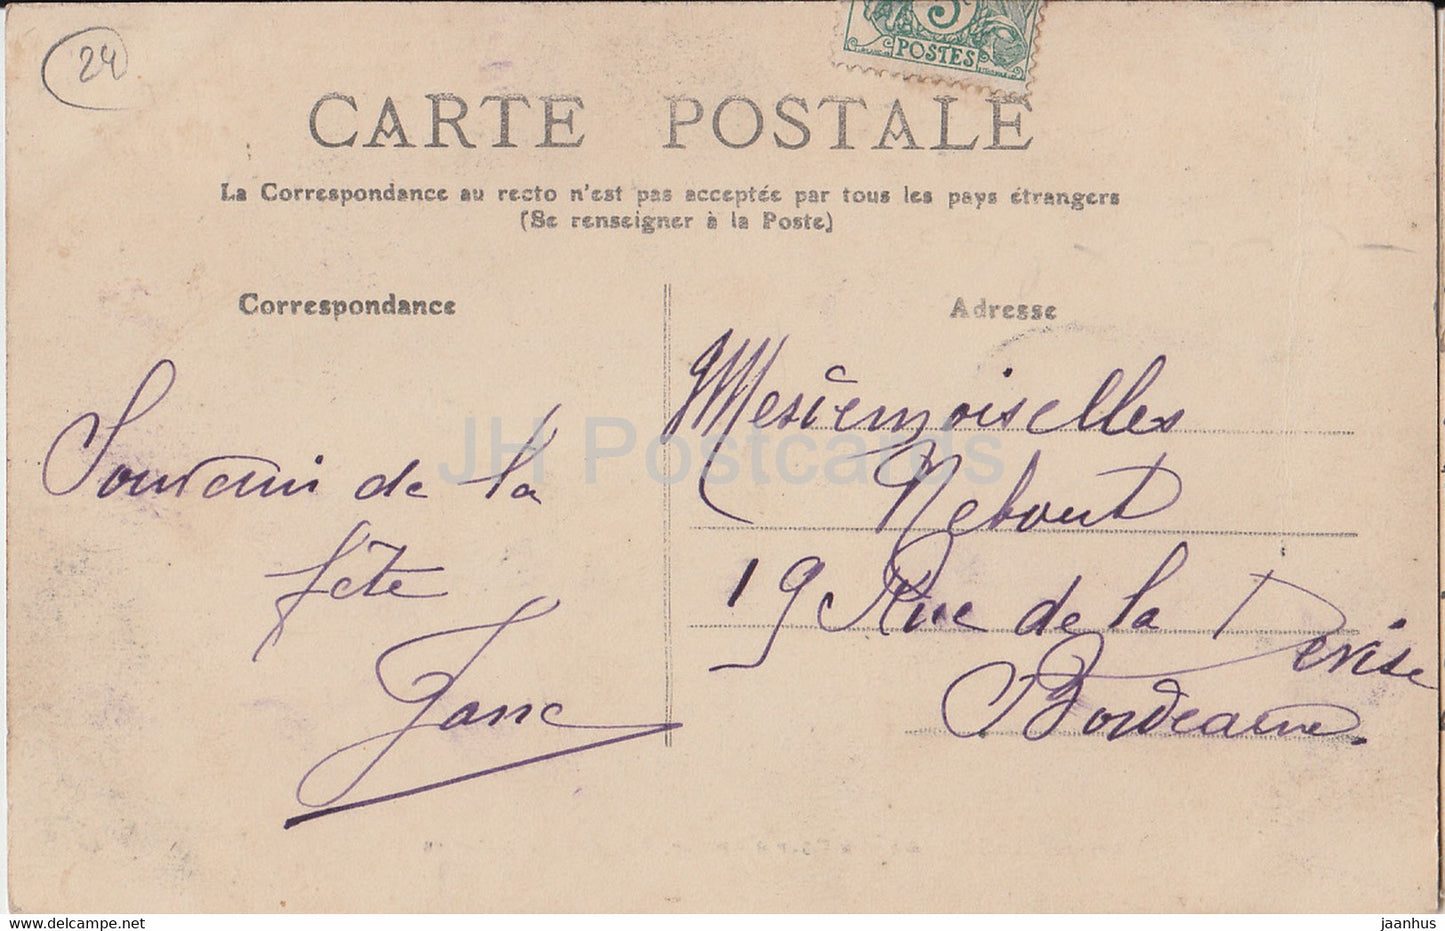 Chancelade - La Cour d'Amour - Vue des Spectateurs - 43 - carte postale ancienne - 1907 - France - oblitéré